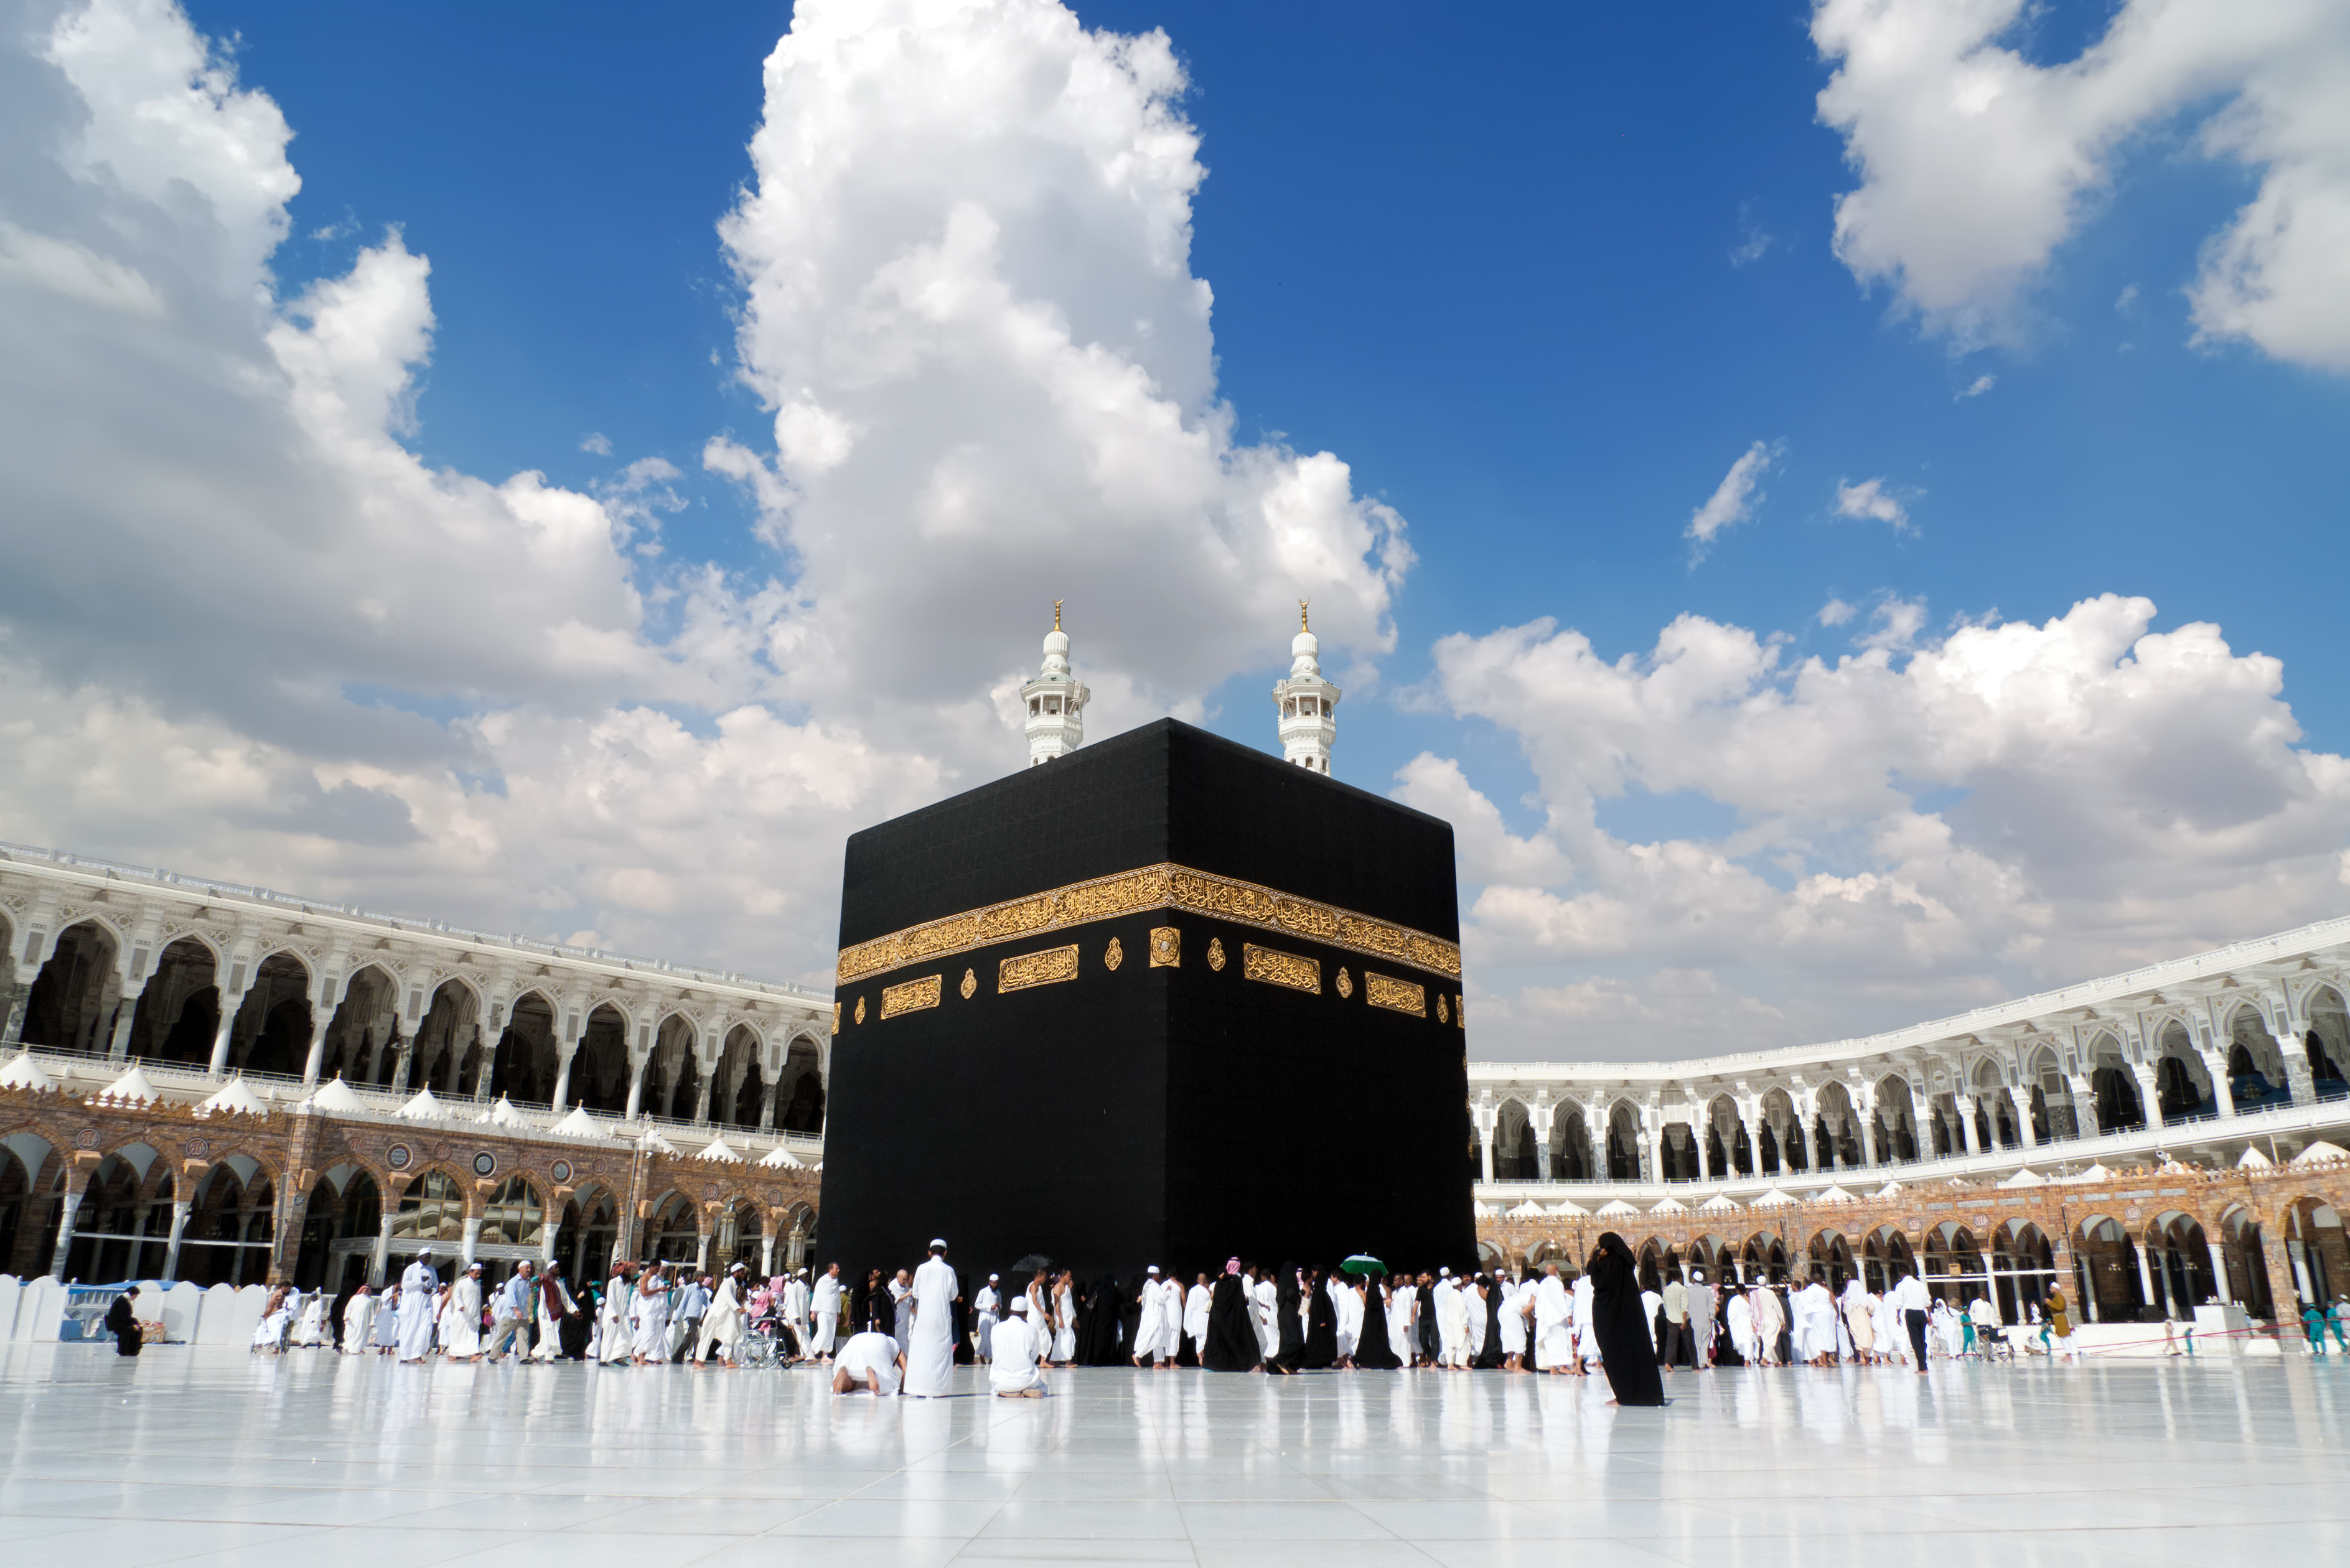 La Kaaba es importante por su historia y relevancia, pero no se la adora de ninguna manera